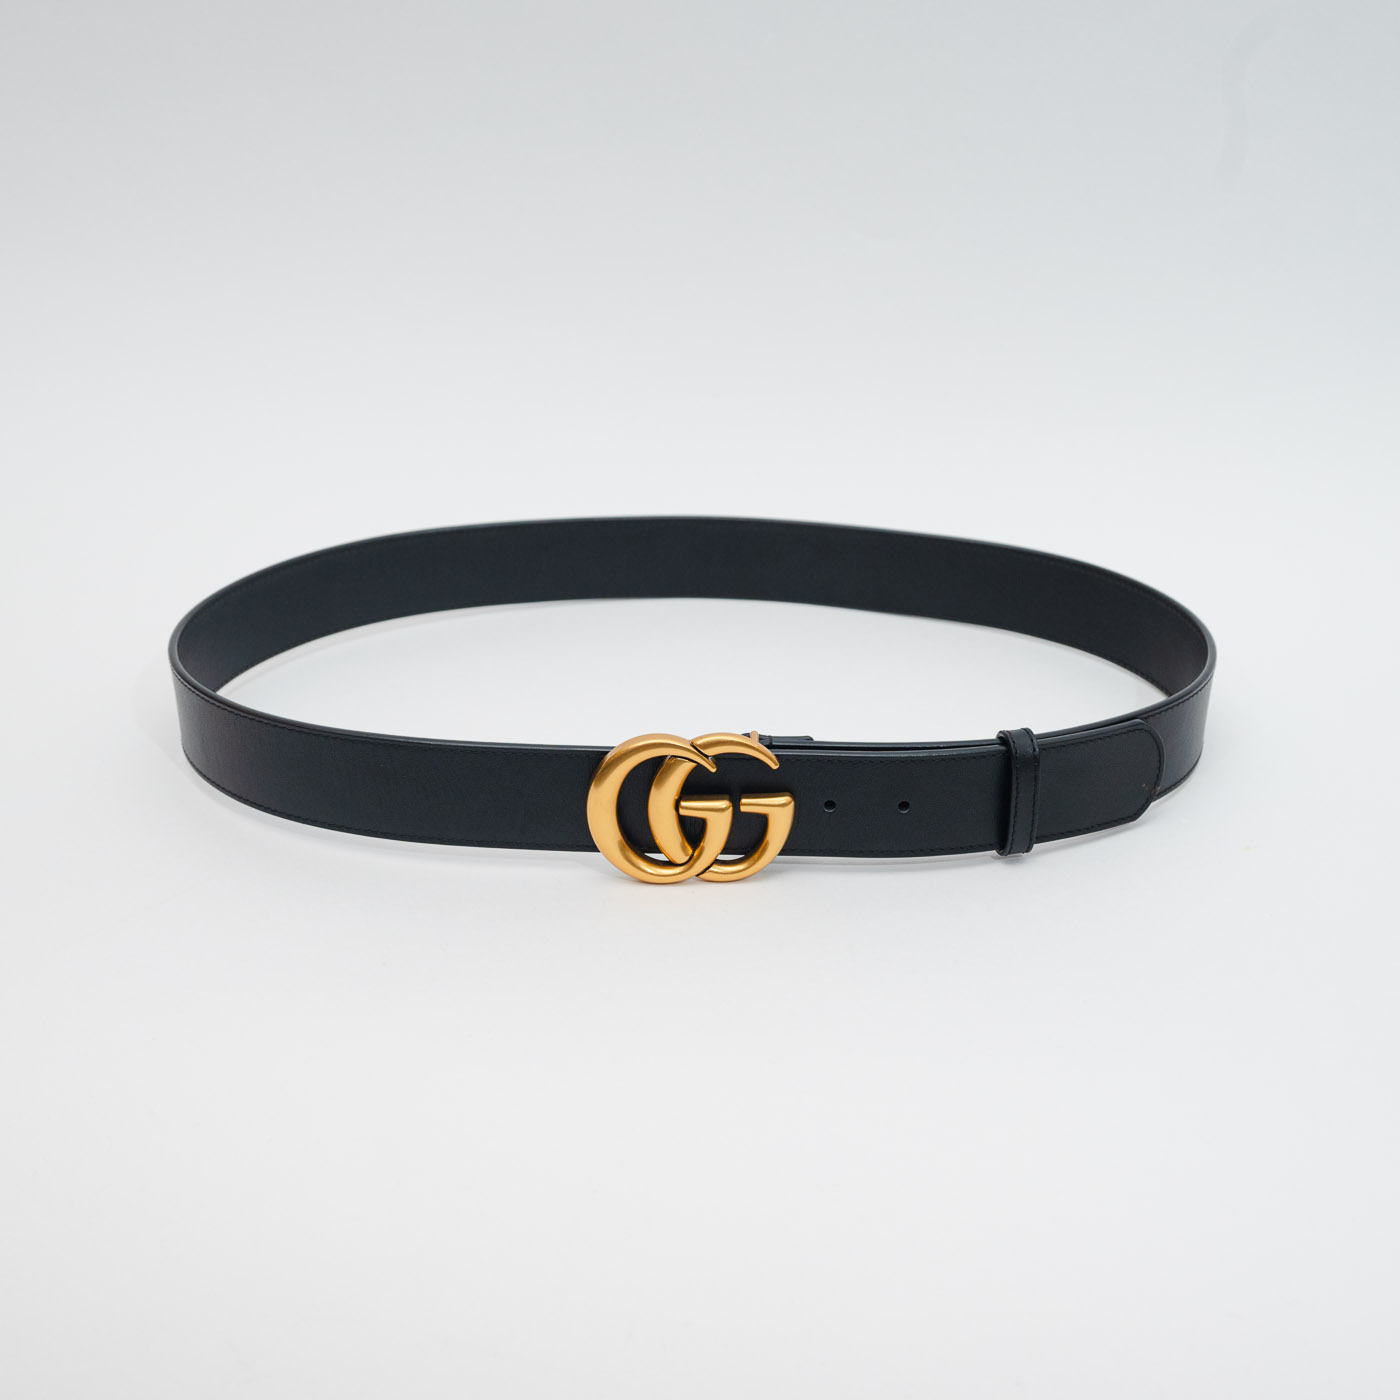 Cinturon negro Doble G - El Vestidor Vintage - Moda marcas segunda mano y